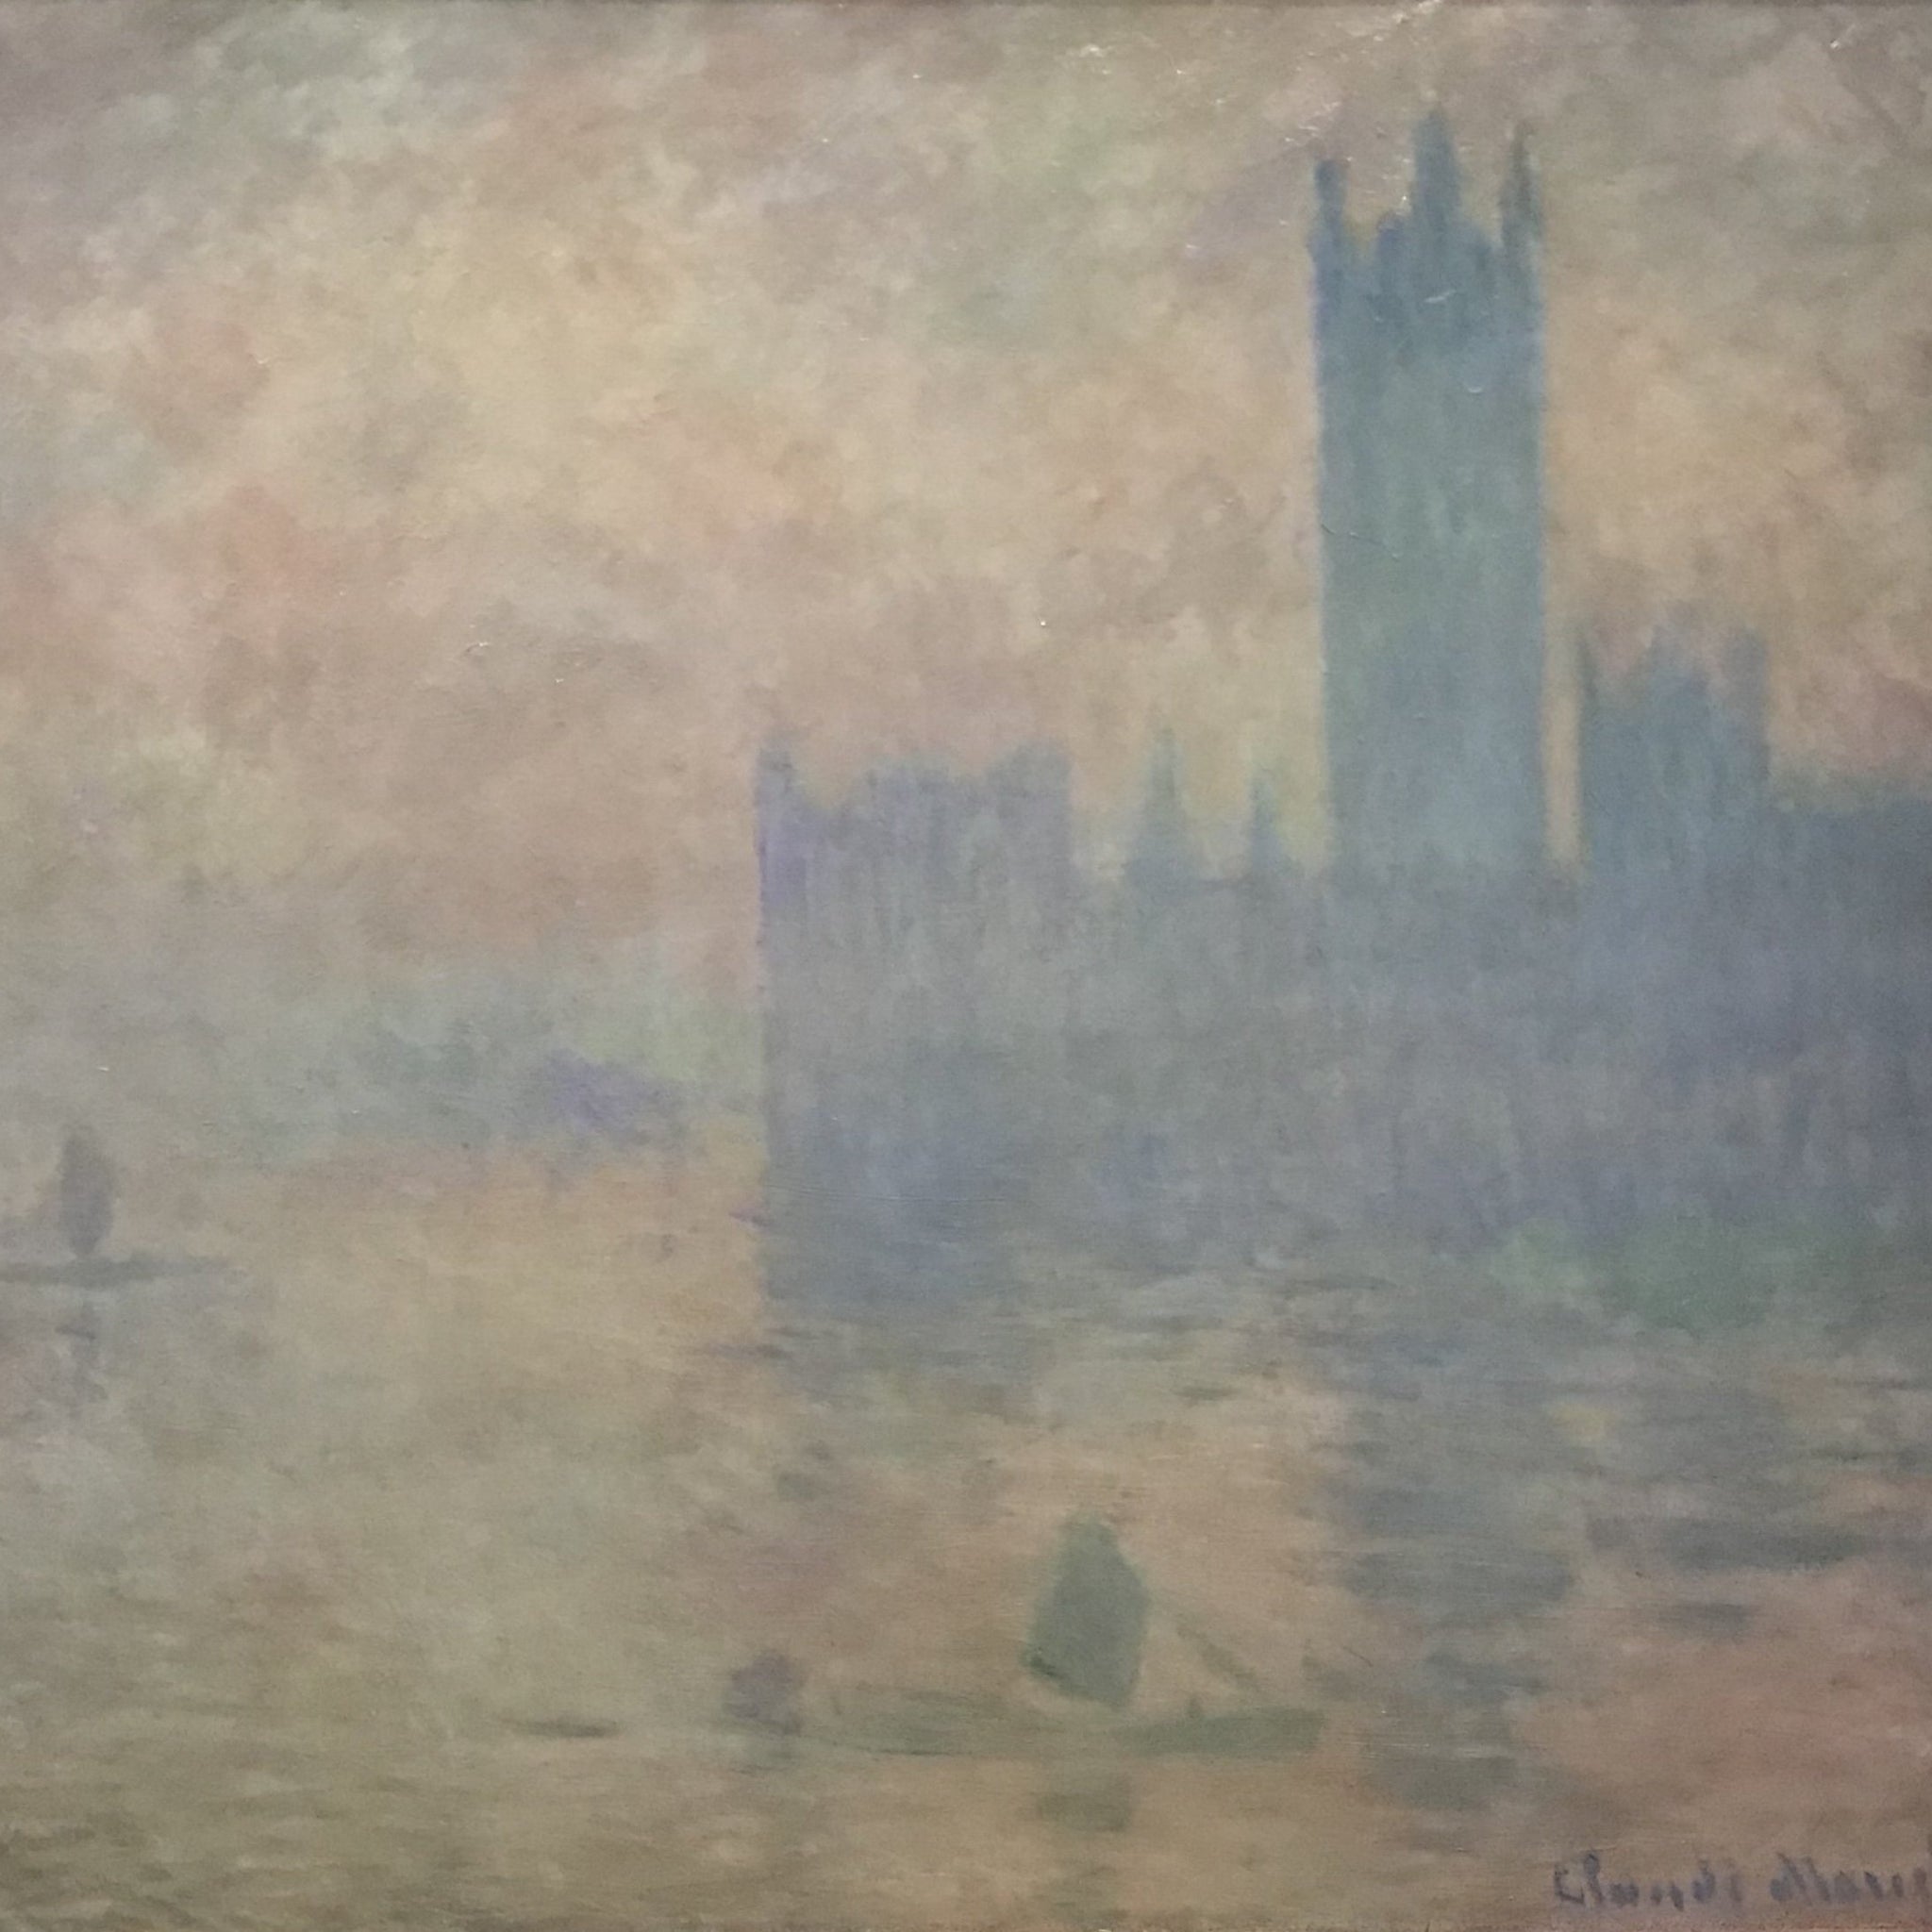 Le Parlement de Londres, effet de brouillard - Claude Monet